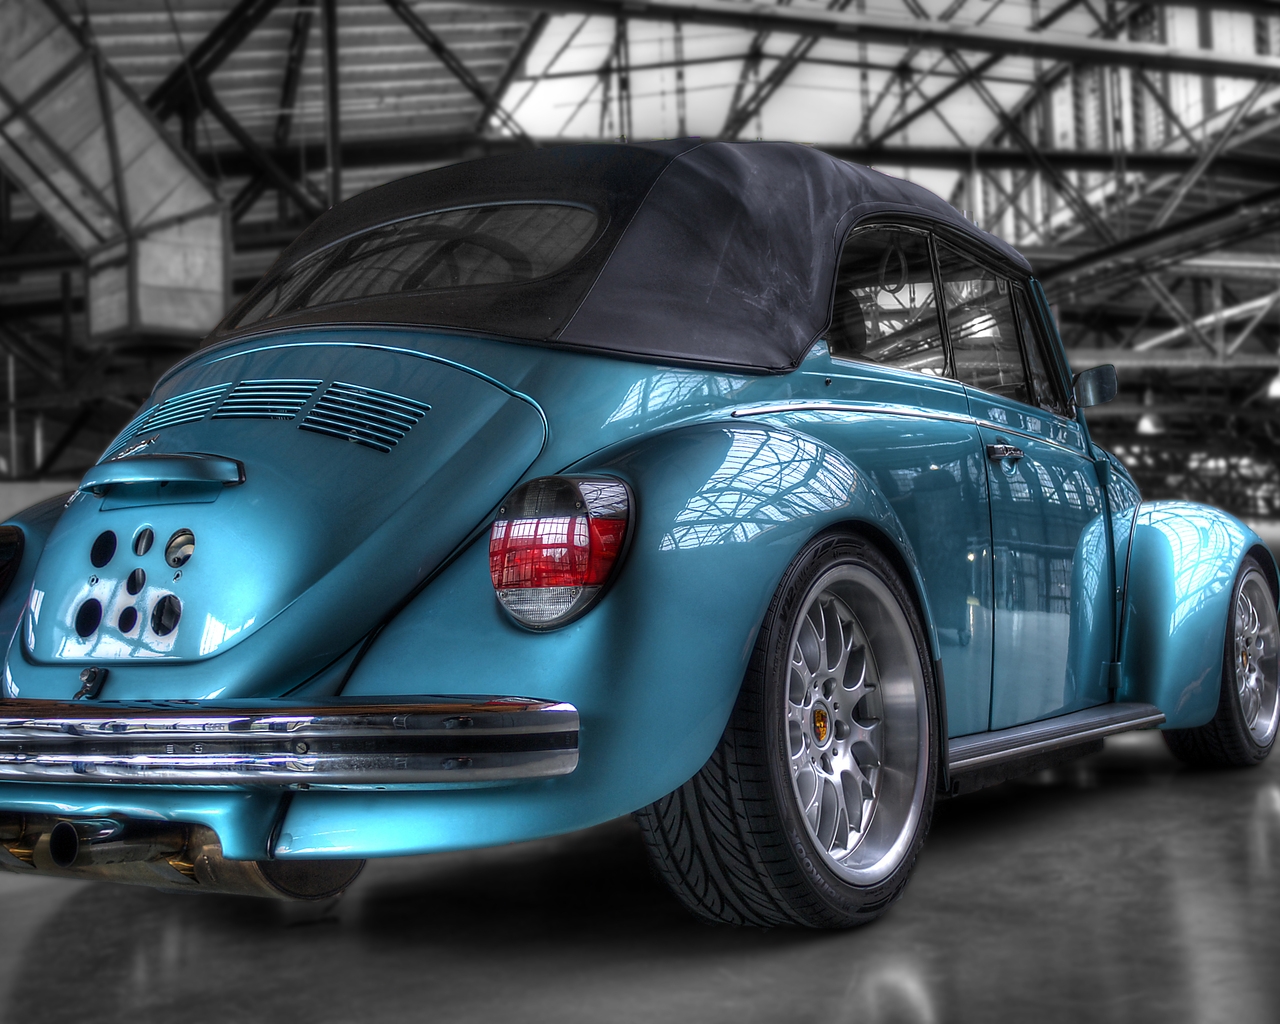 Volkswagen Super Beetle for 1280 x 1024 resolution